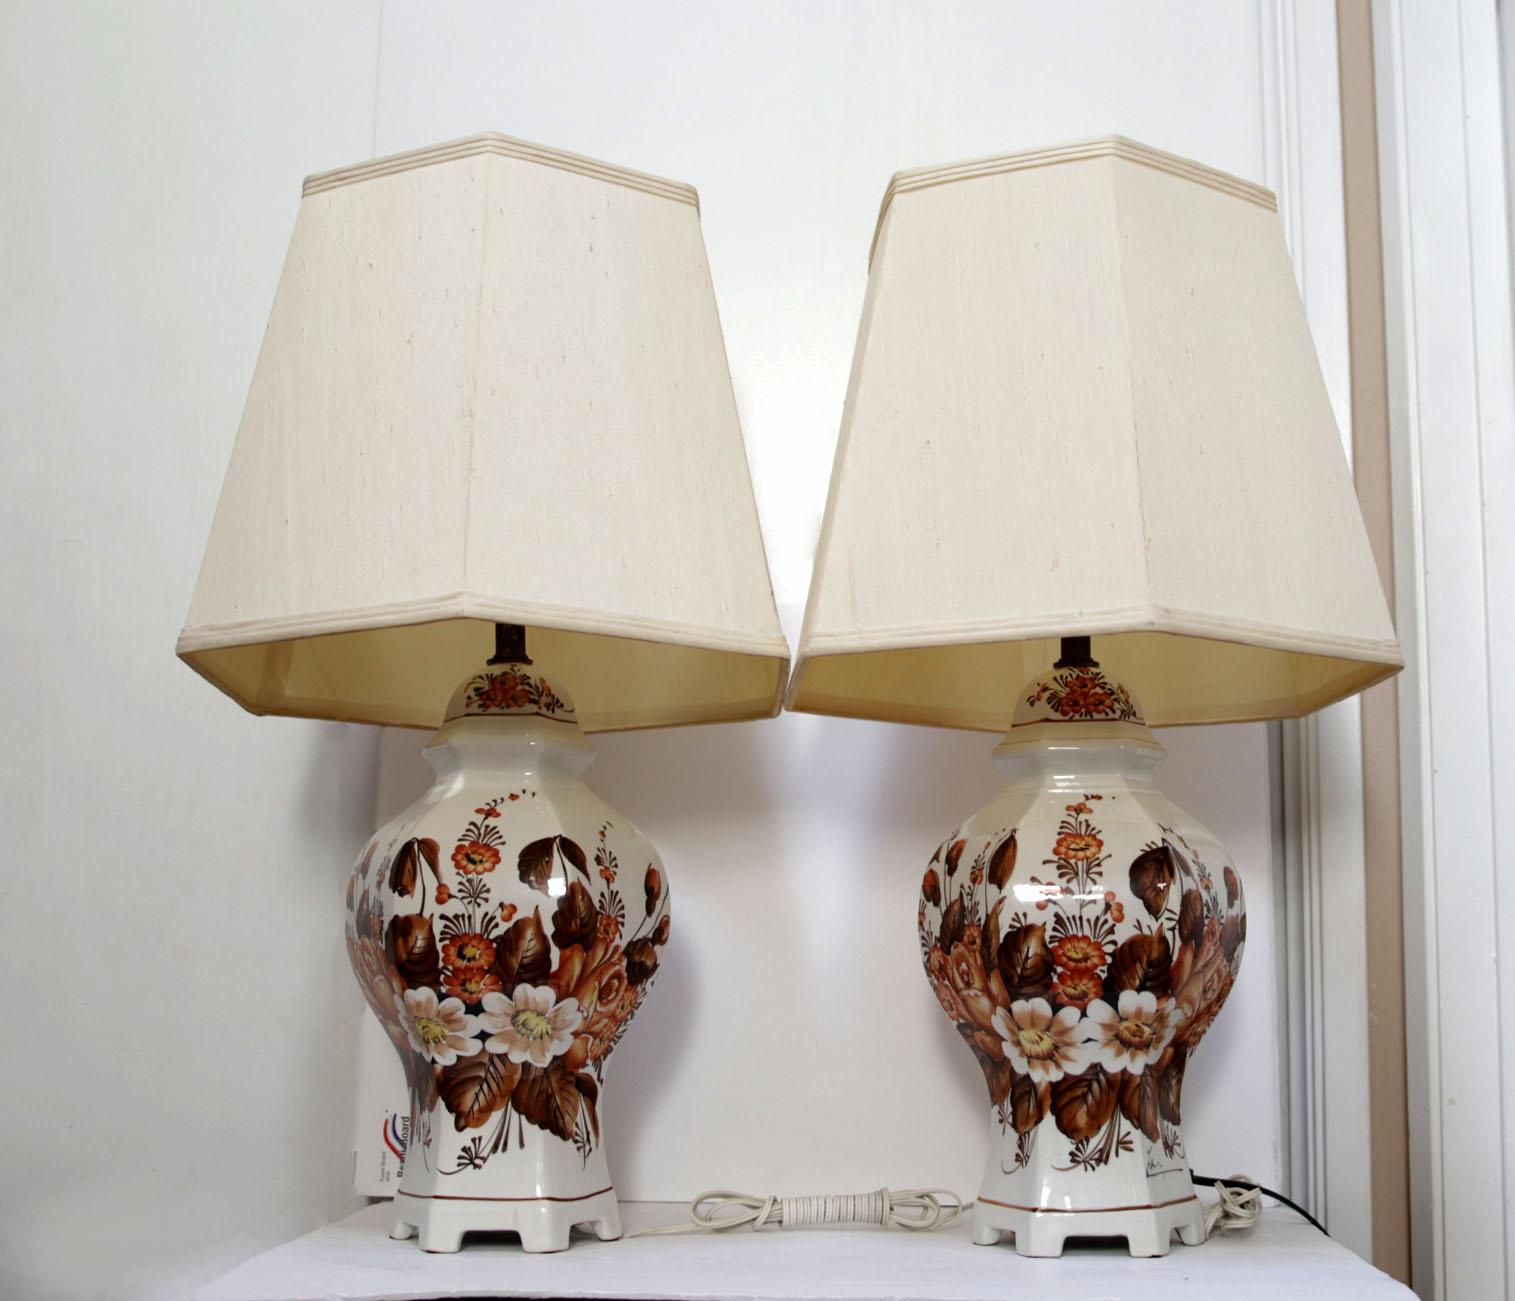 Diese Lampen stammen aus dem norditalienischen Zentrum für Keramik, Ancora. ein Paar italienische handbemalte sechseckige Tischlampen aus Porzellan sind
dekoriert und signiert vom Künstler, Antonio Zen, hergestellt in Ancora, Italien, 1940-1960. Die